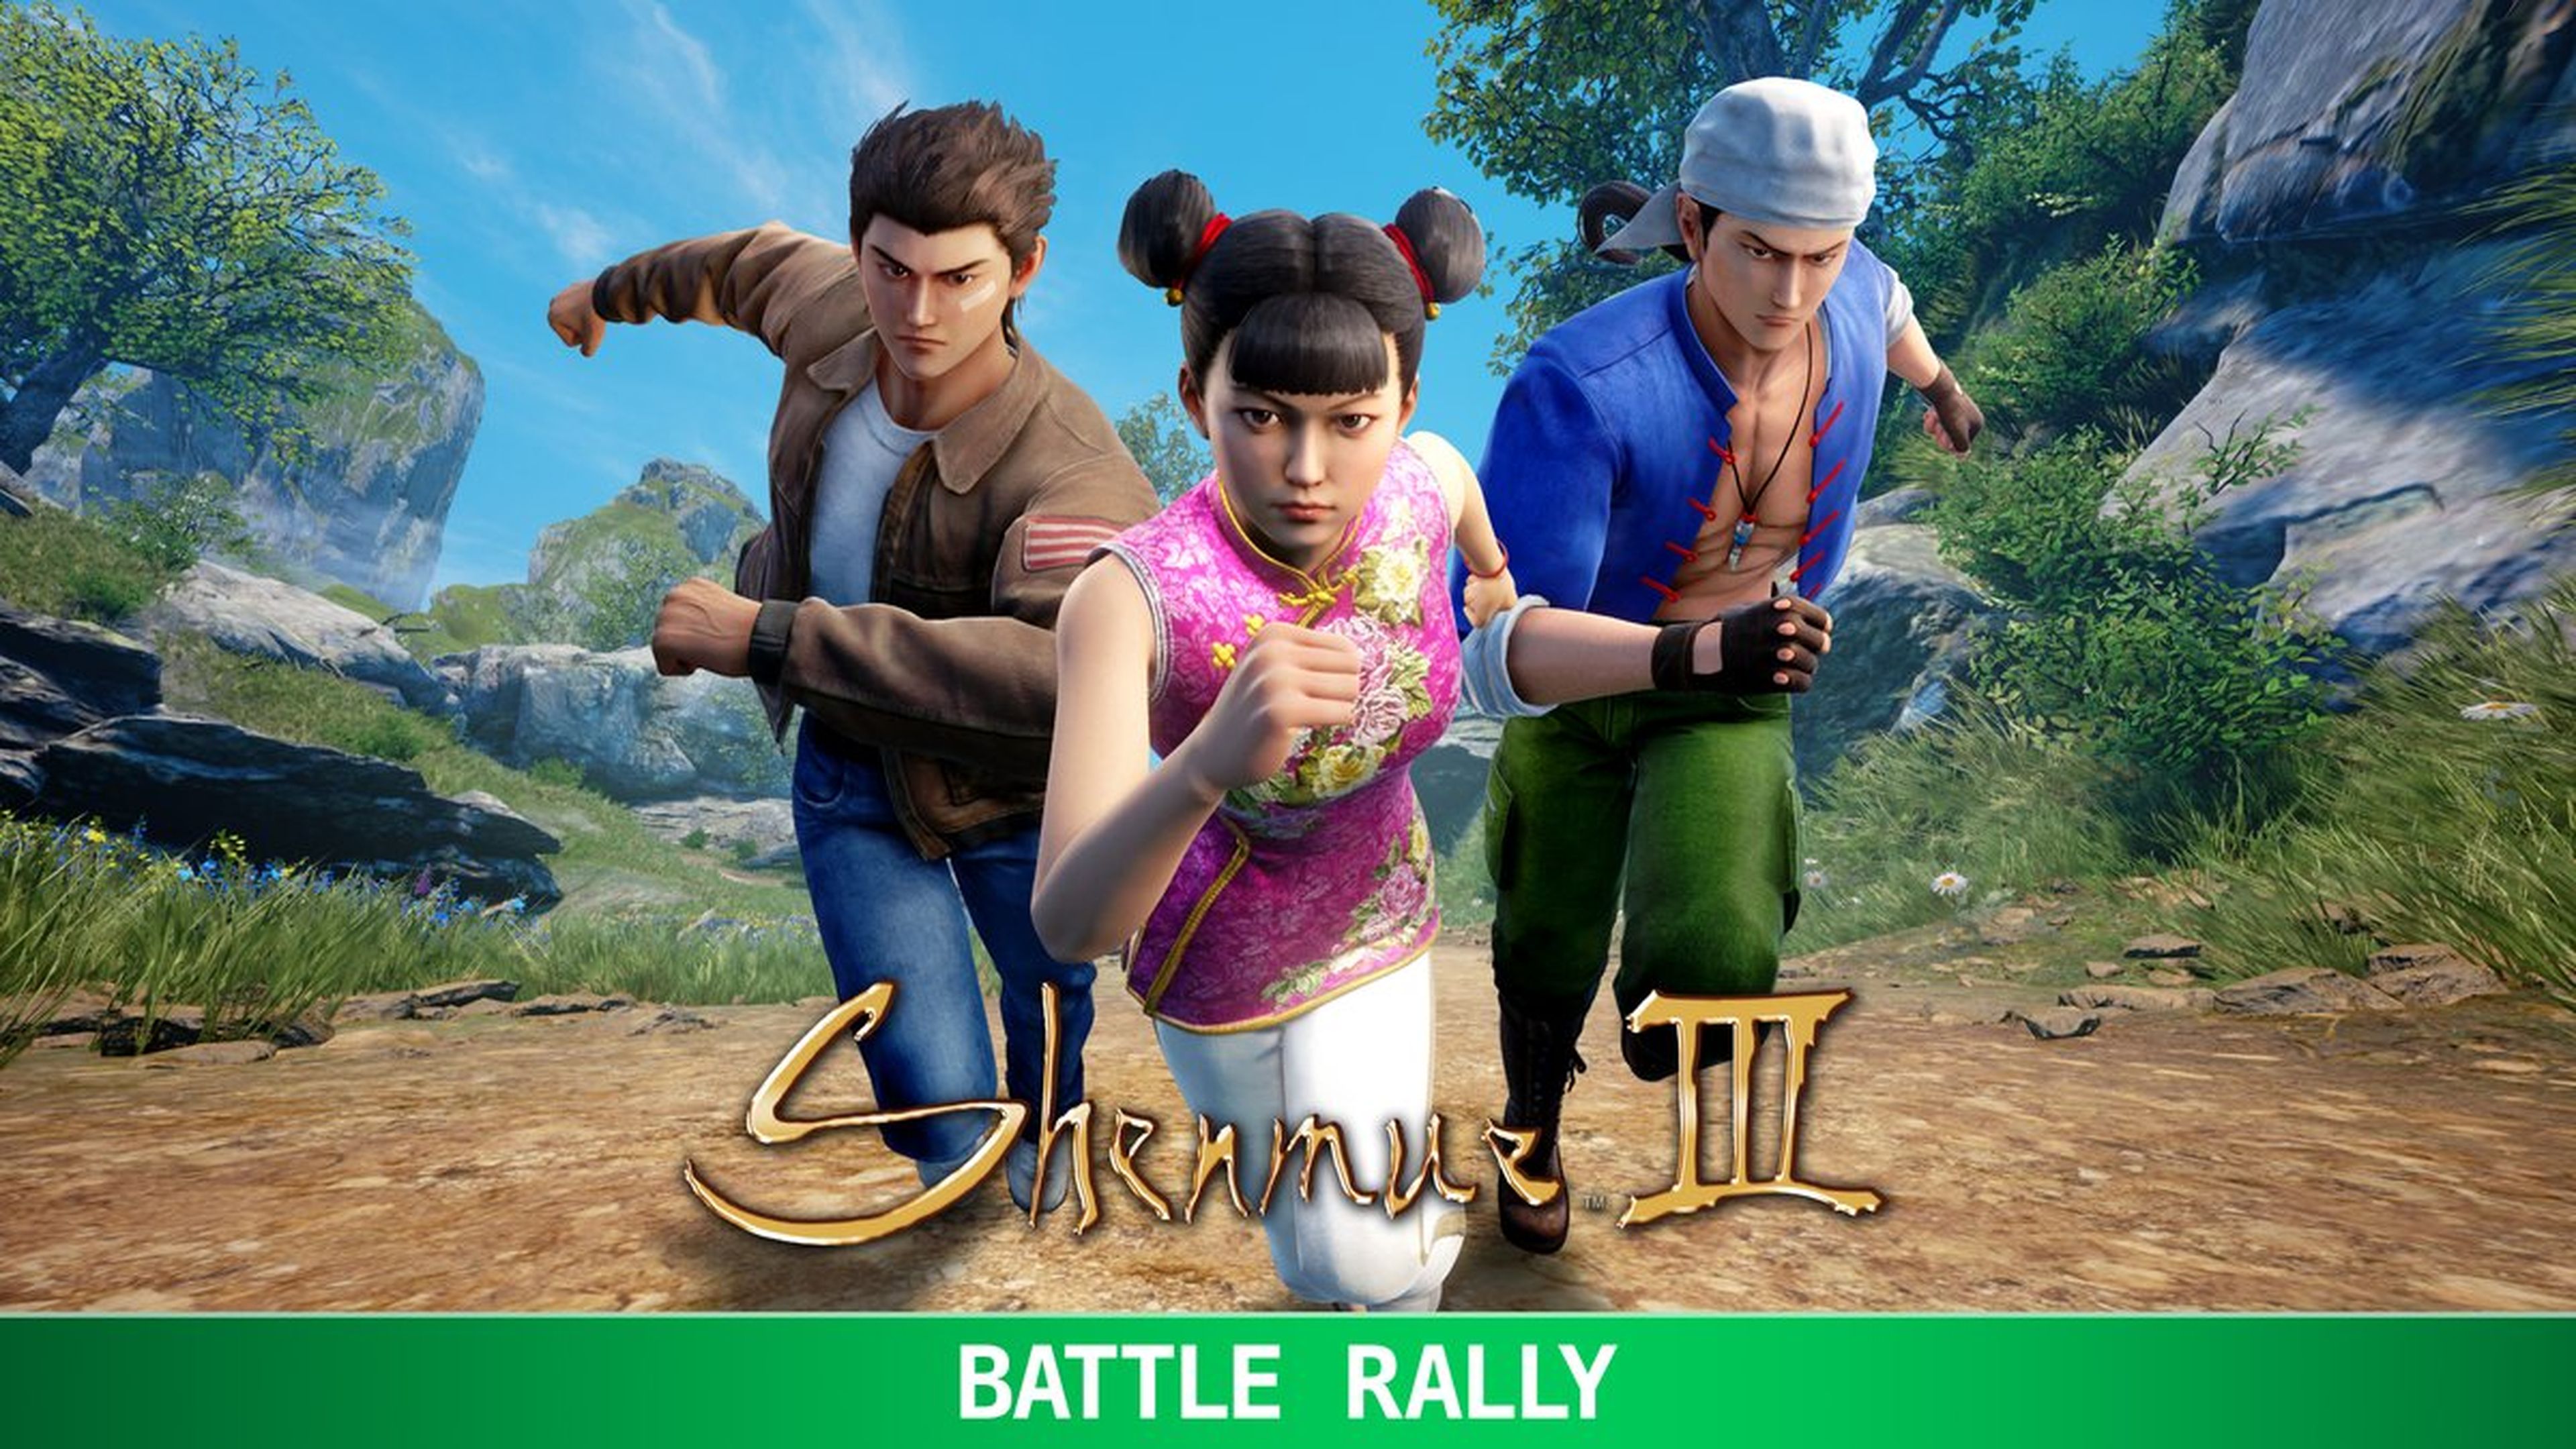 Shenmue III Battle Rally